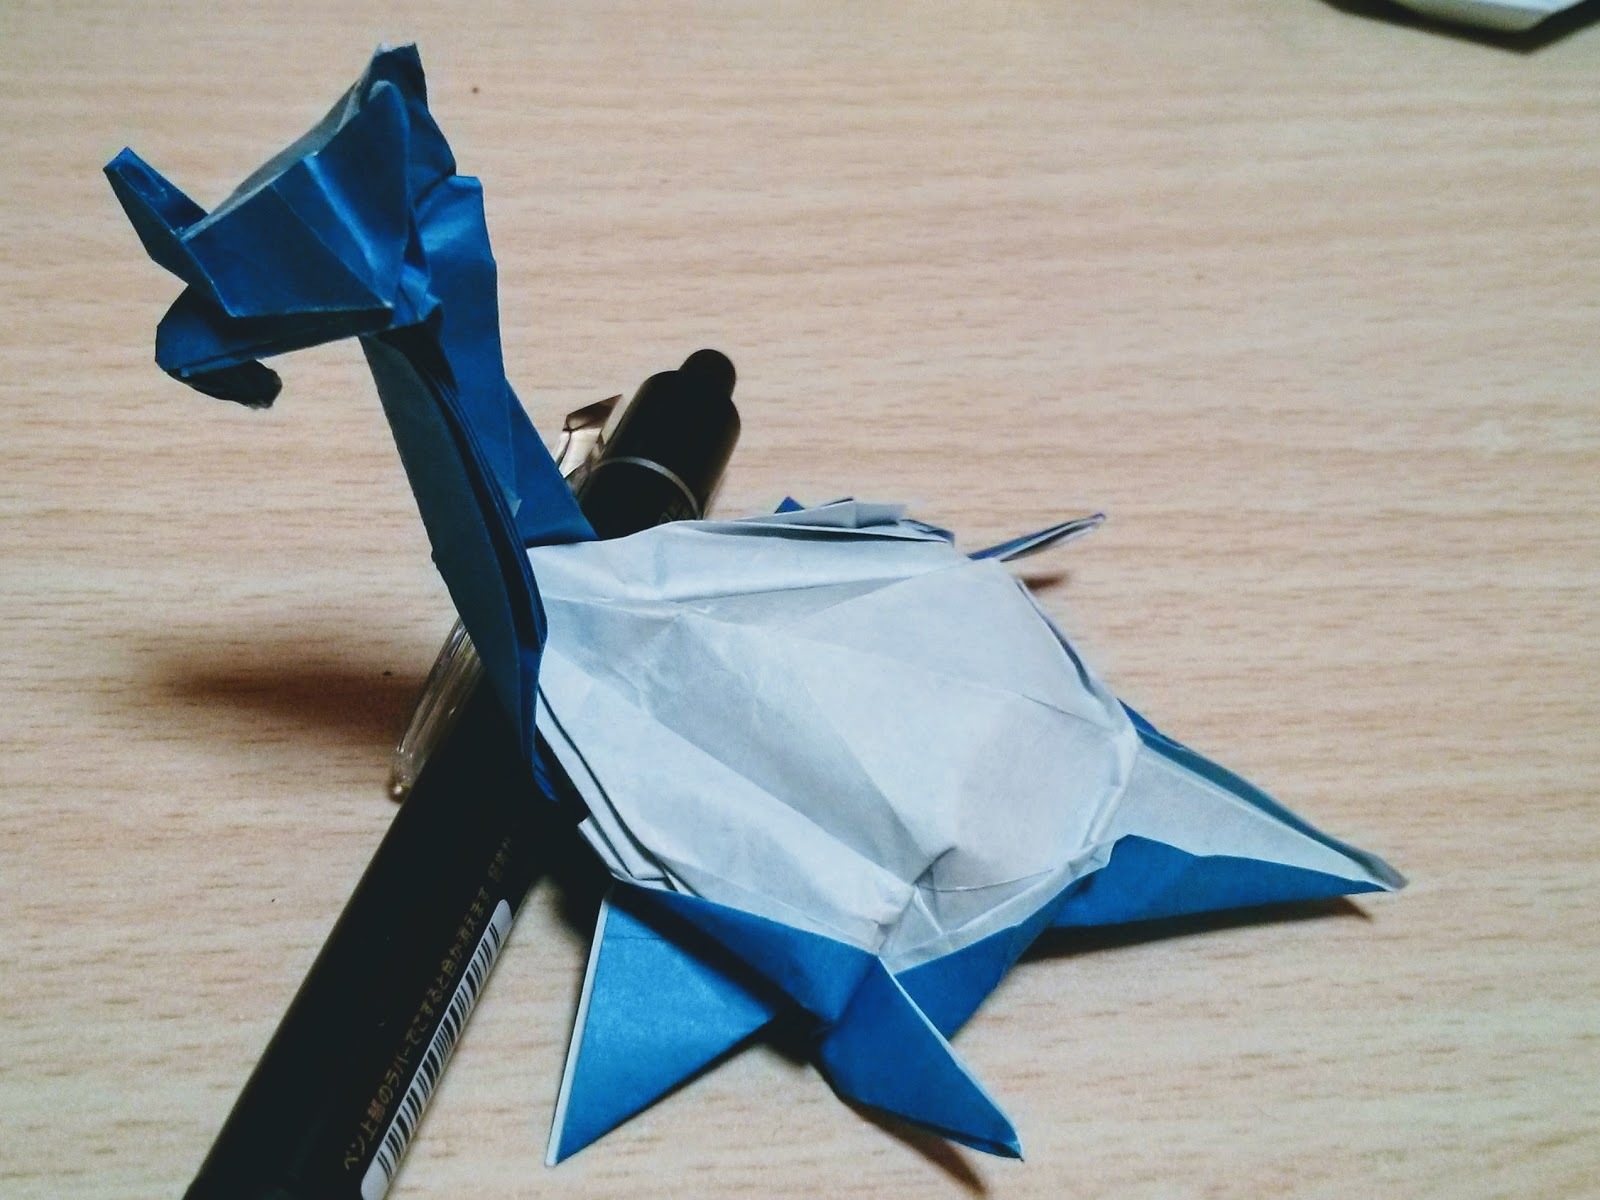 折り紙で作る人気 伝説のポケモンキャラクター18選 全身立体の折り方とは 6ページ目 暮らし の